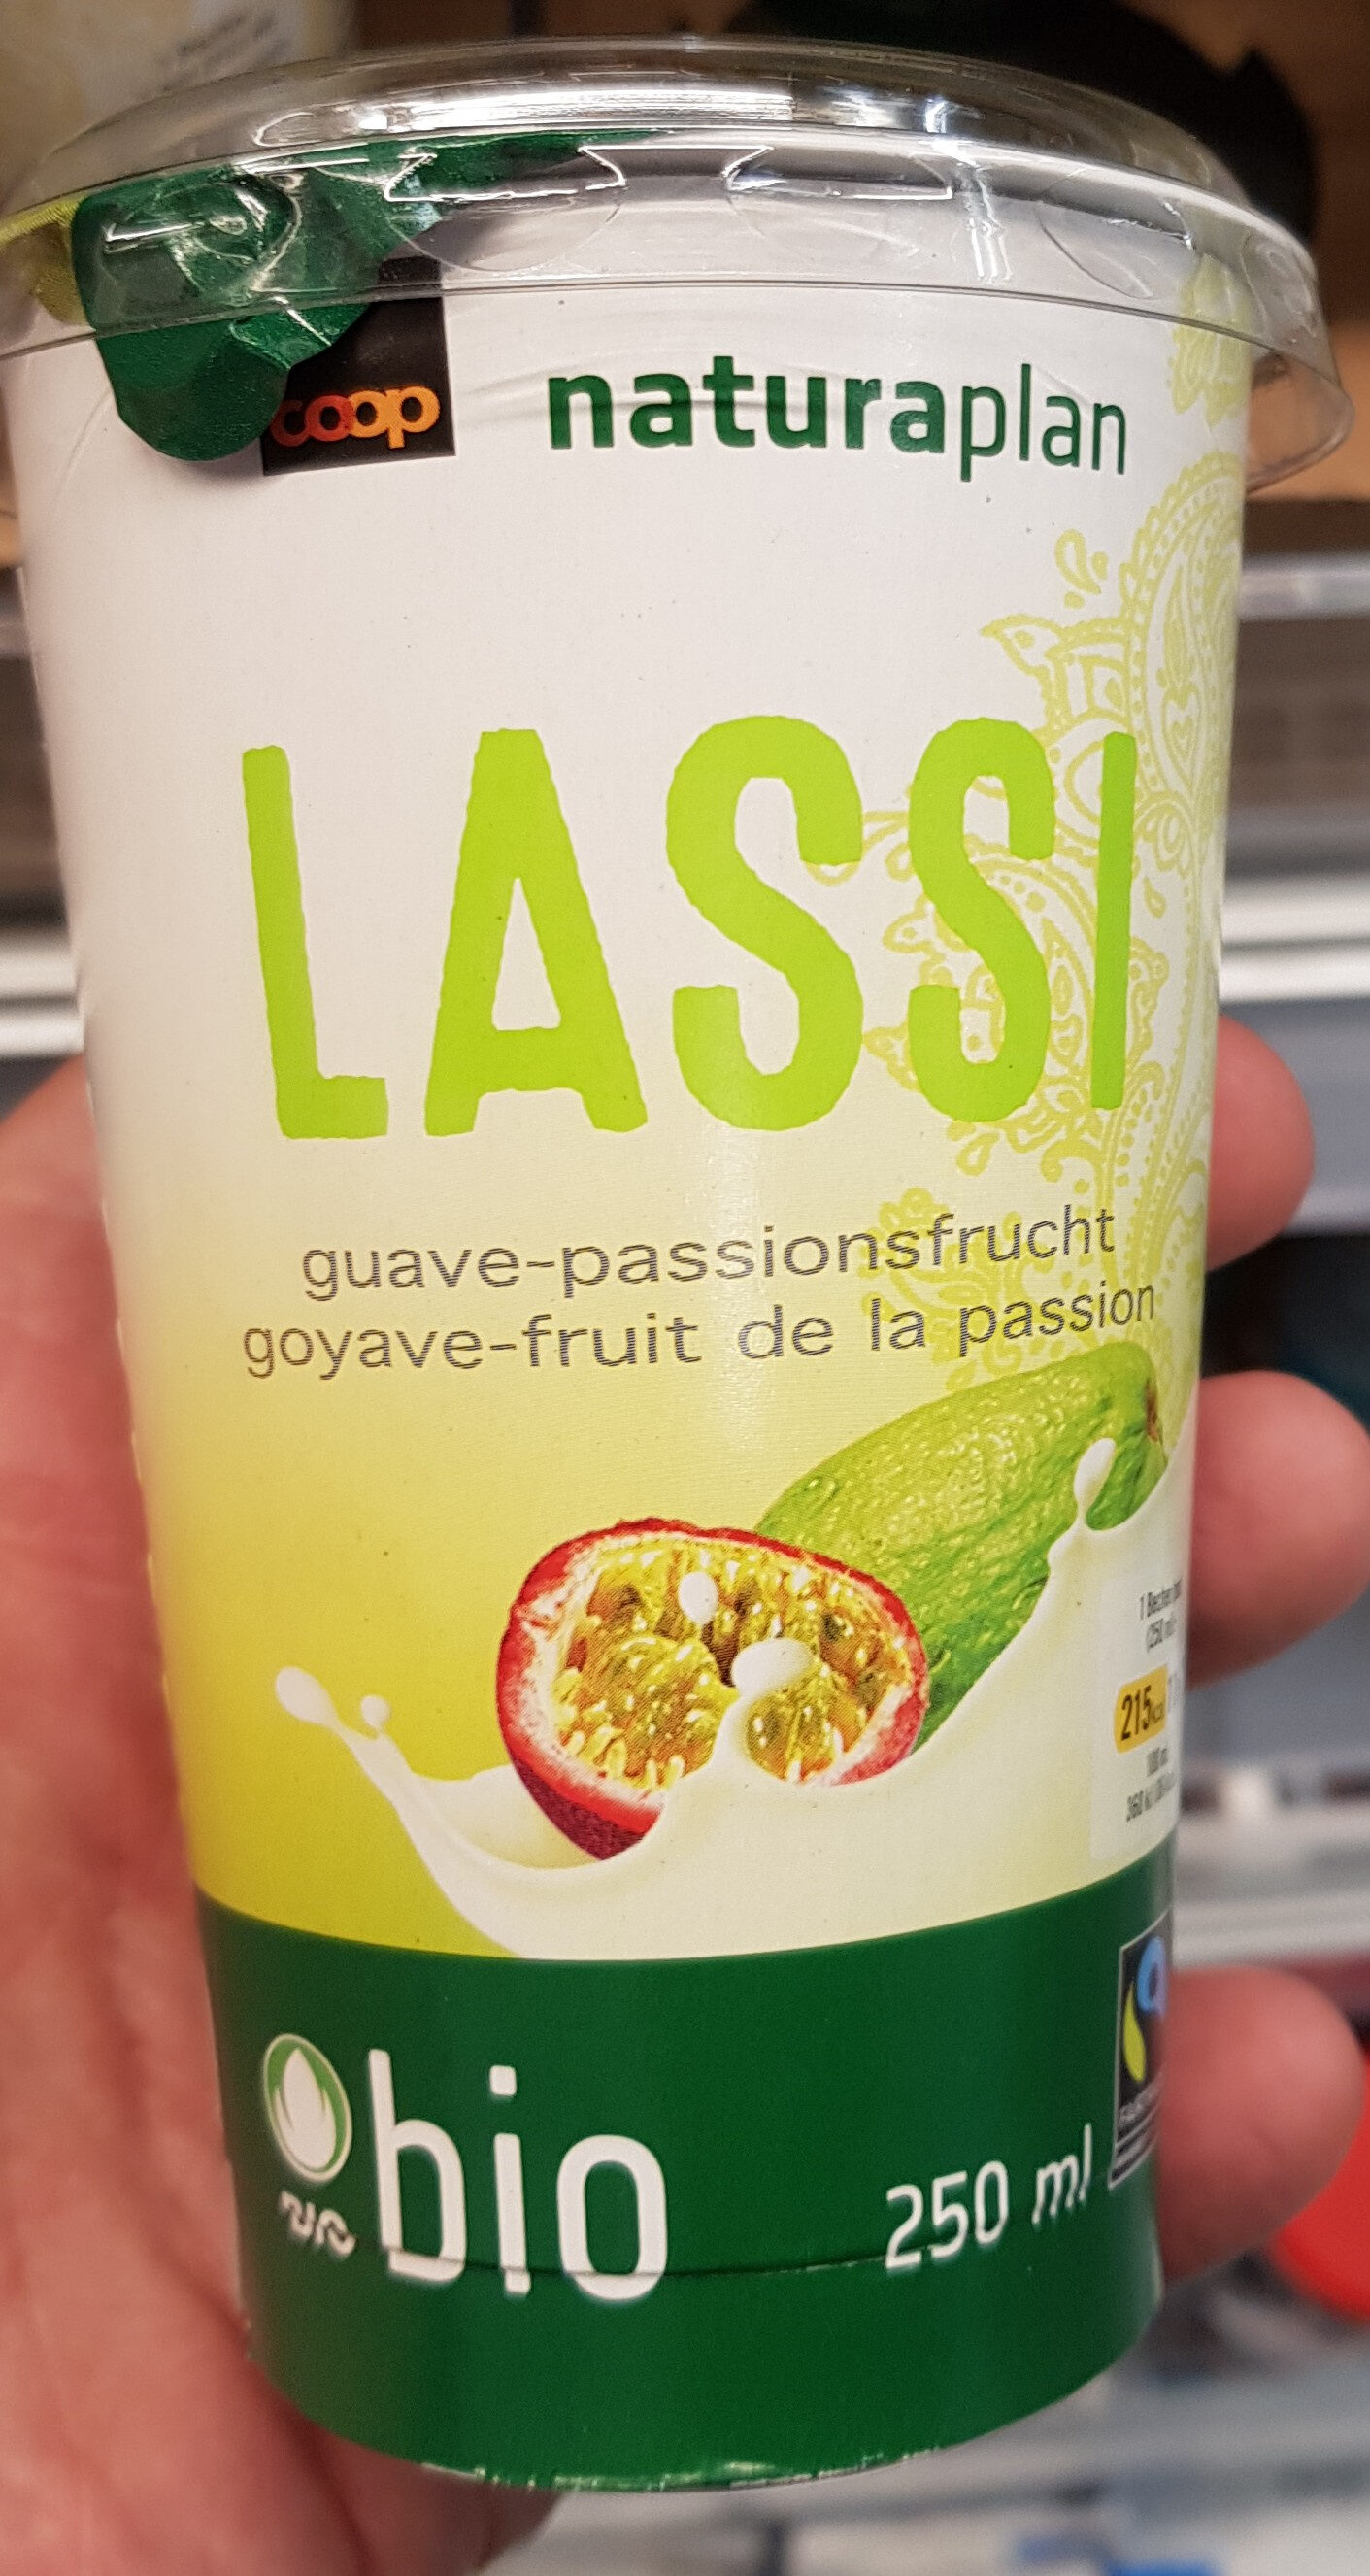 Lassi goyave - fruit de la passion - Product - fr